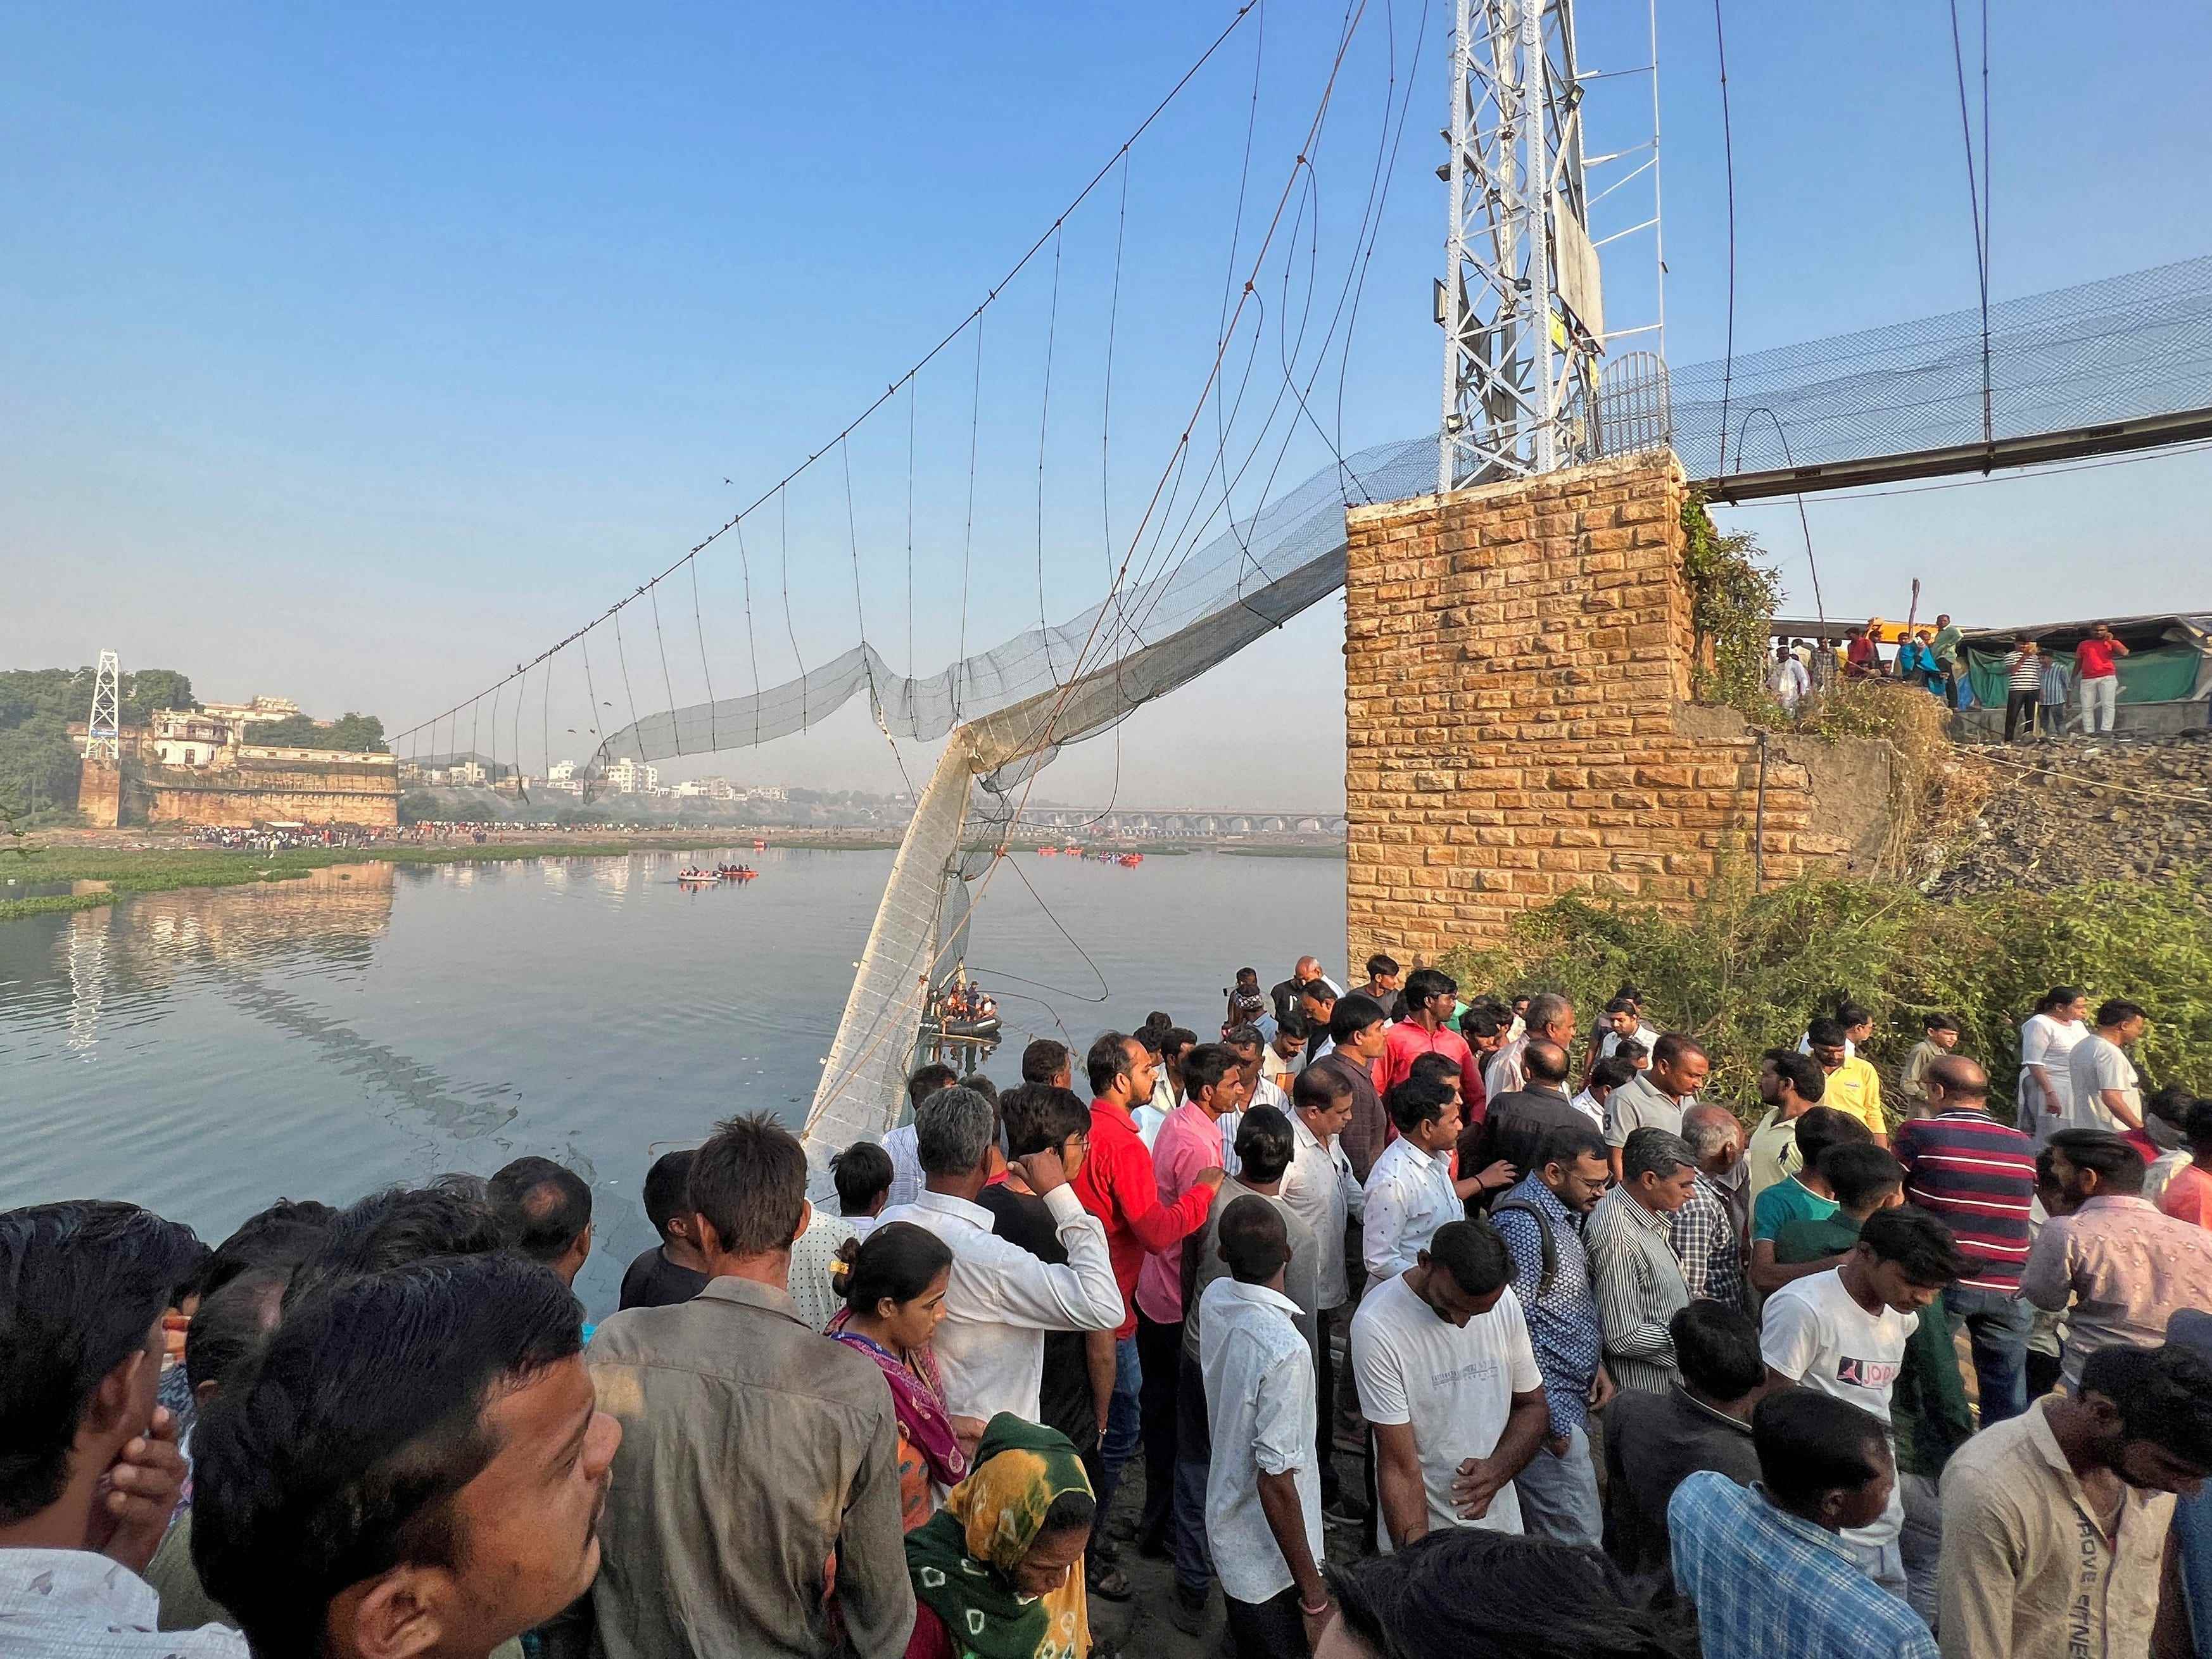 Menschen versammeln sich, während Retter nach Überlebenden suchen, nachdem eine Hängebrücke in der Stadt Morbi eingestürzt ist.